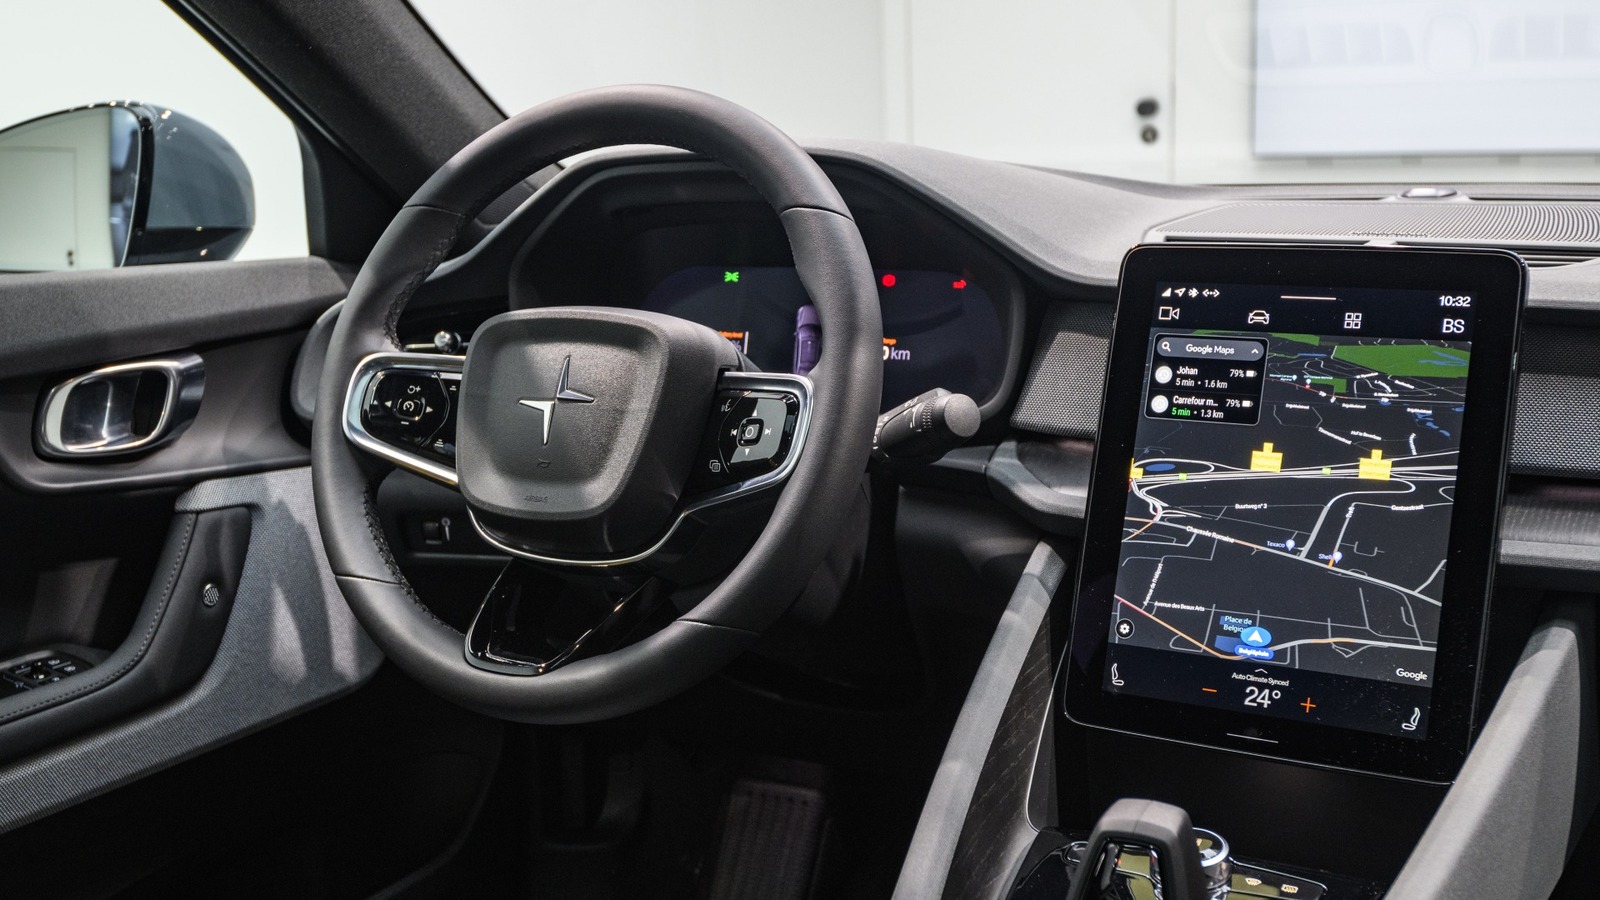 Android Automotive finalmente obtiene una característica muy esperada: este es el automóvil que la obtiene primero